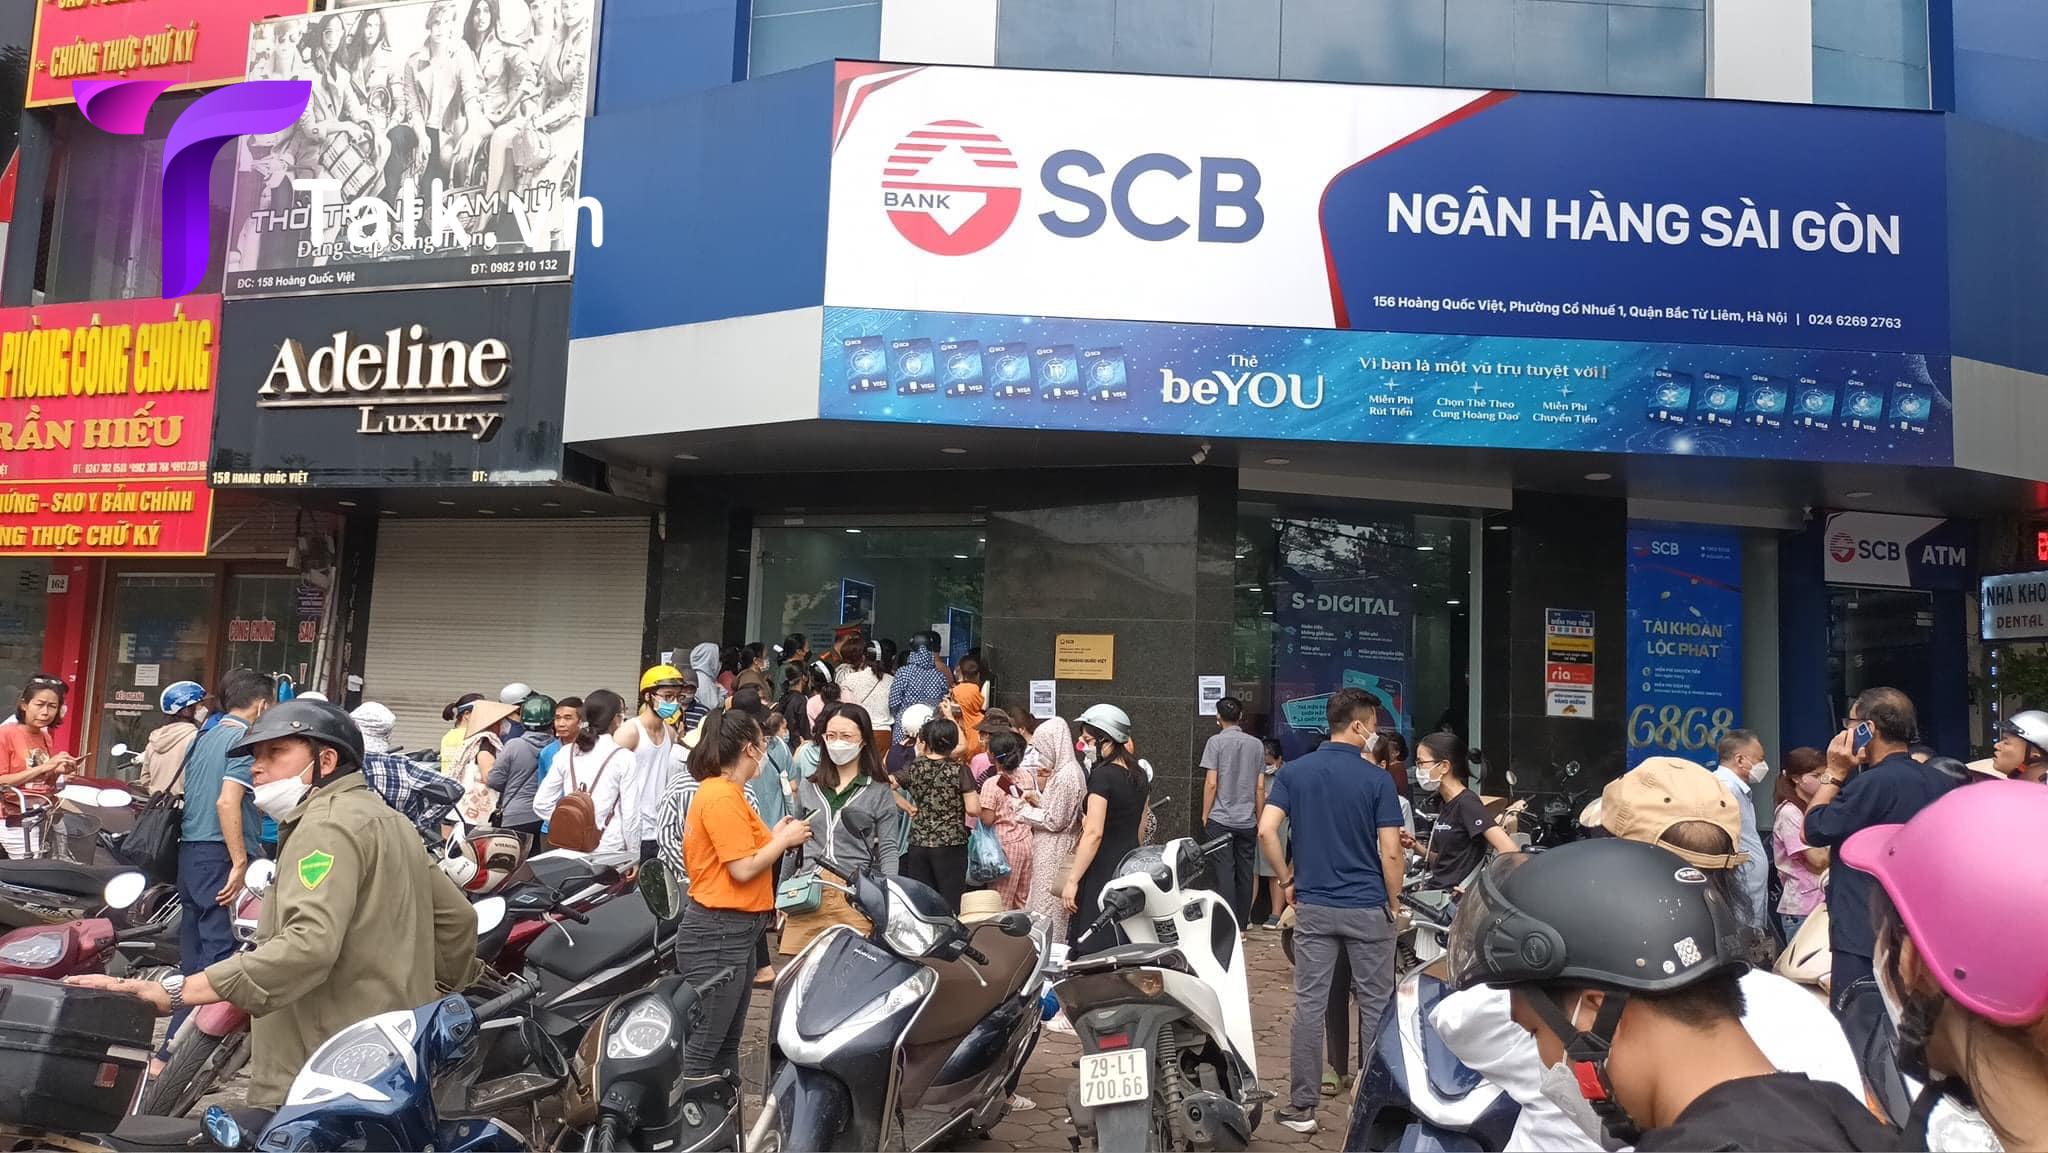 Đến trưa nay nhiều người vẫn đứng trước ngân hàng SCB